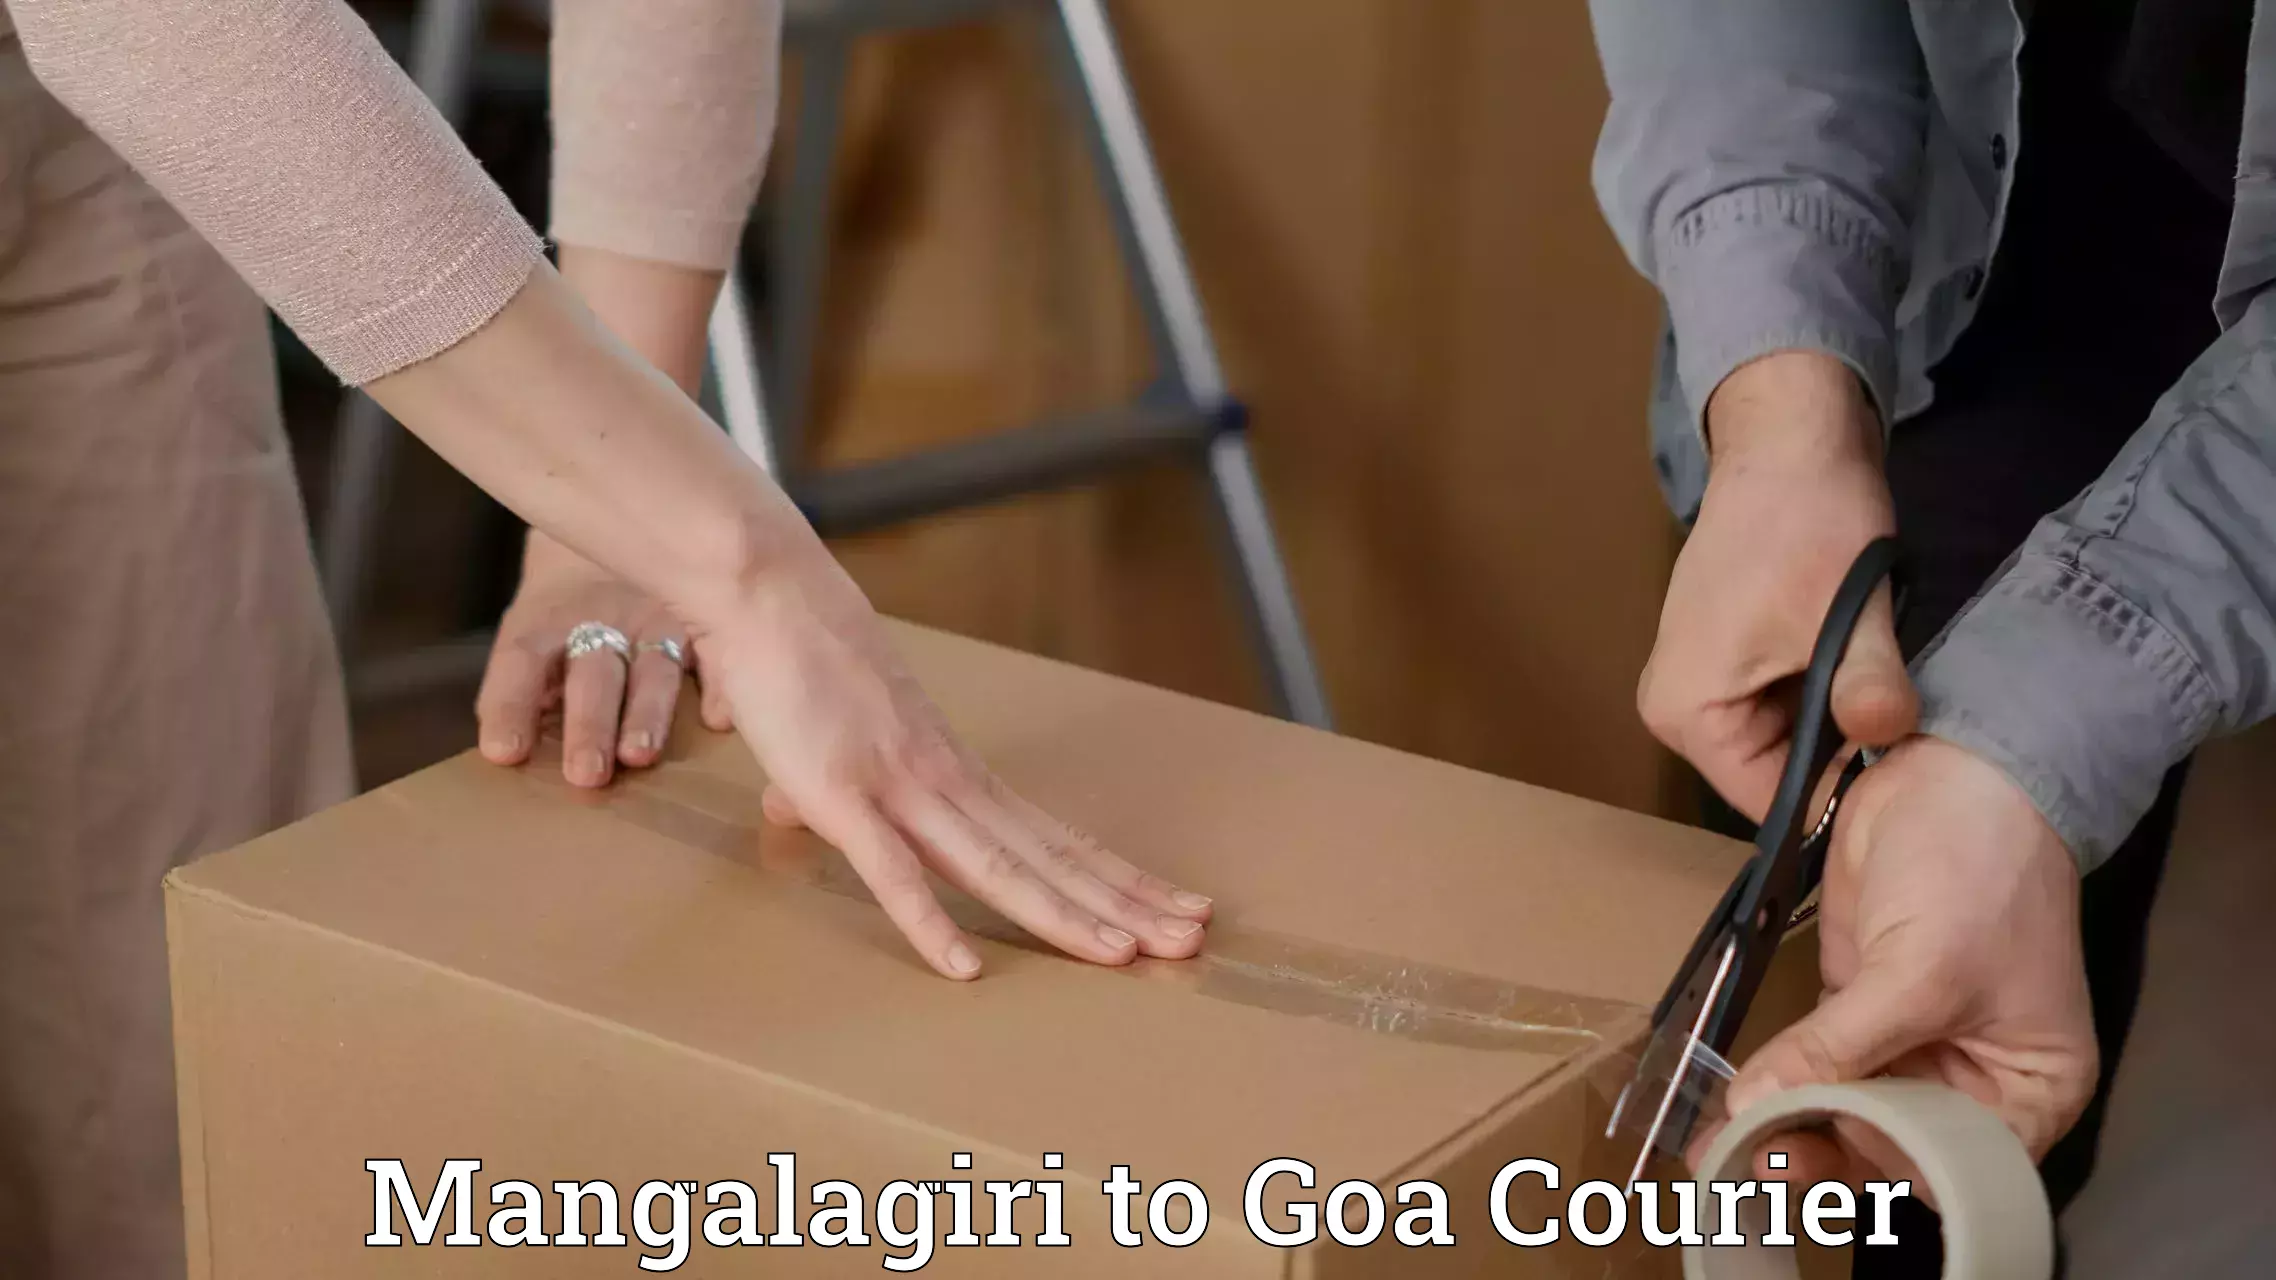 Courier service partnerships Mangalagiri to Goa University